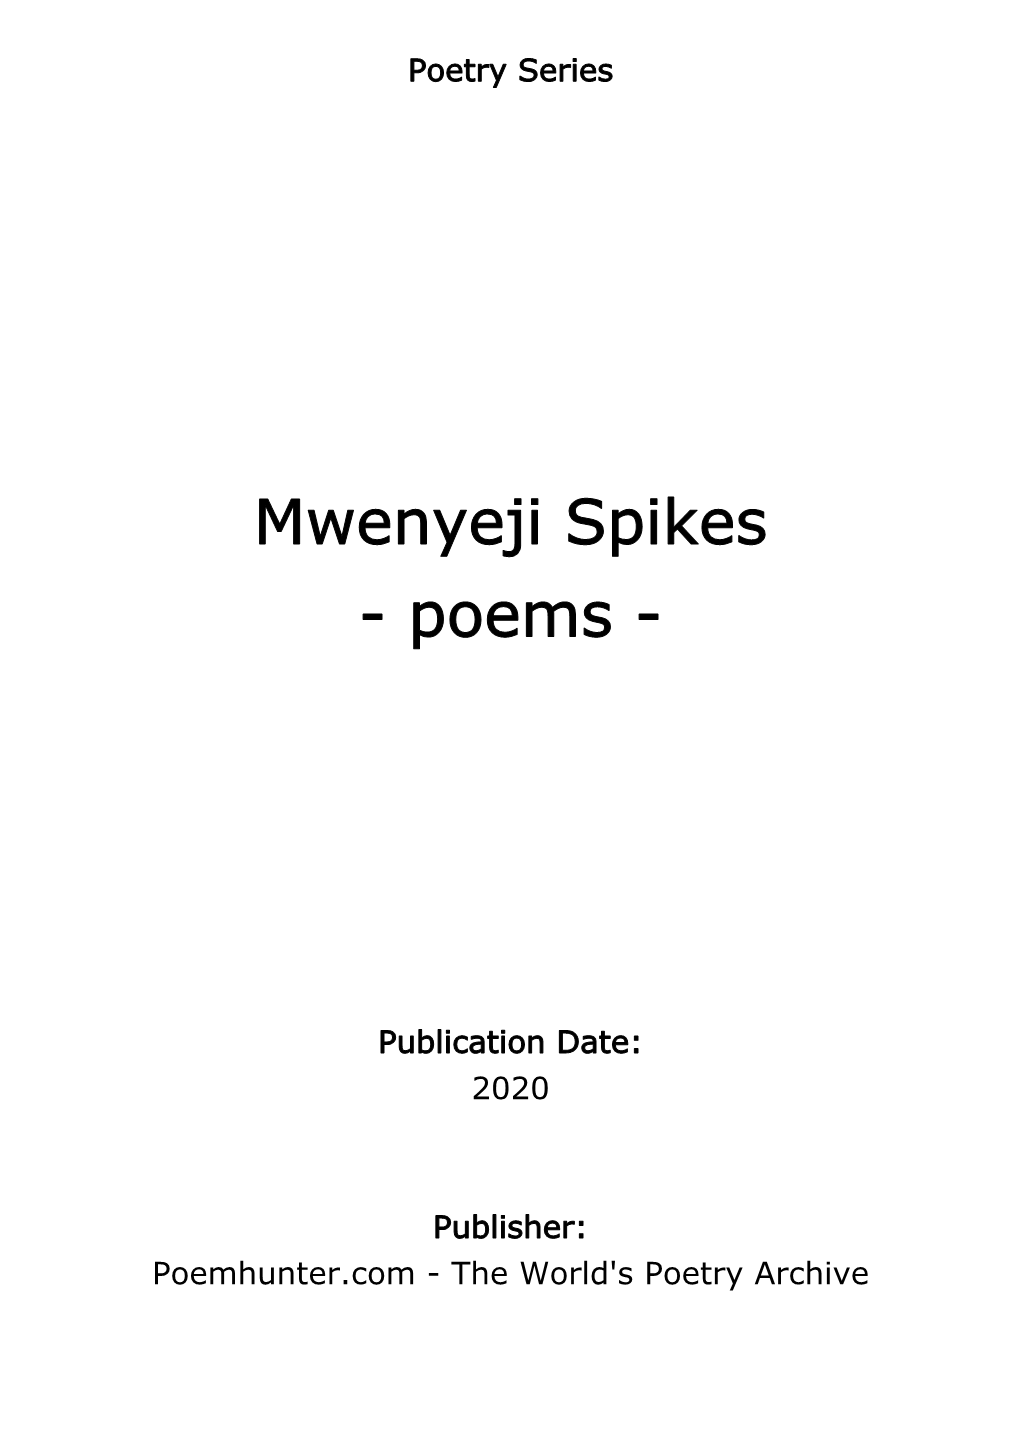 Mwenyeji Spikes - Poems